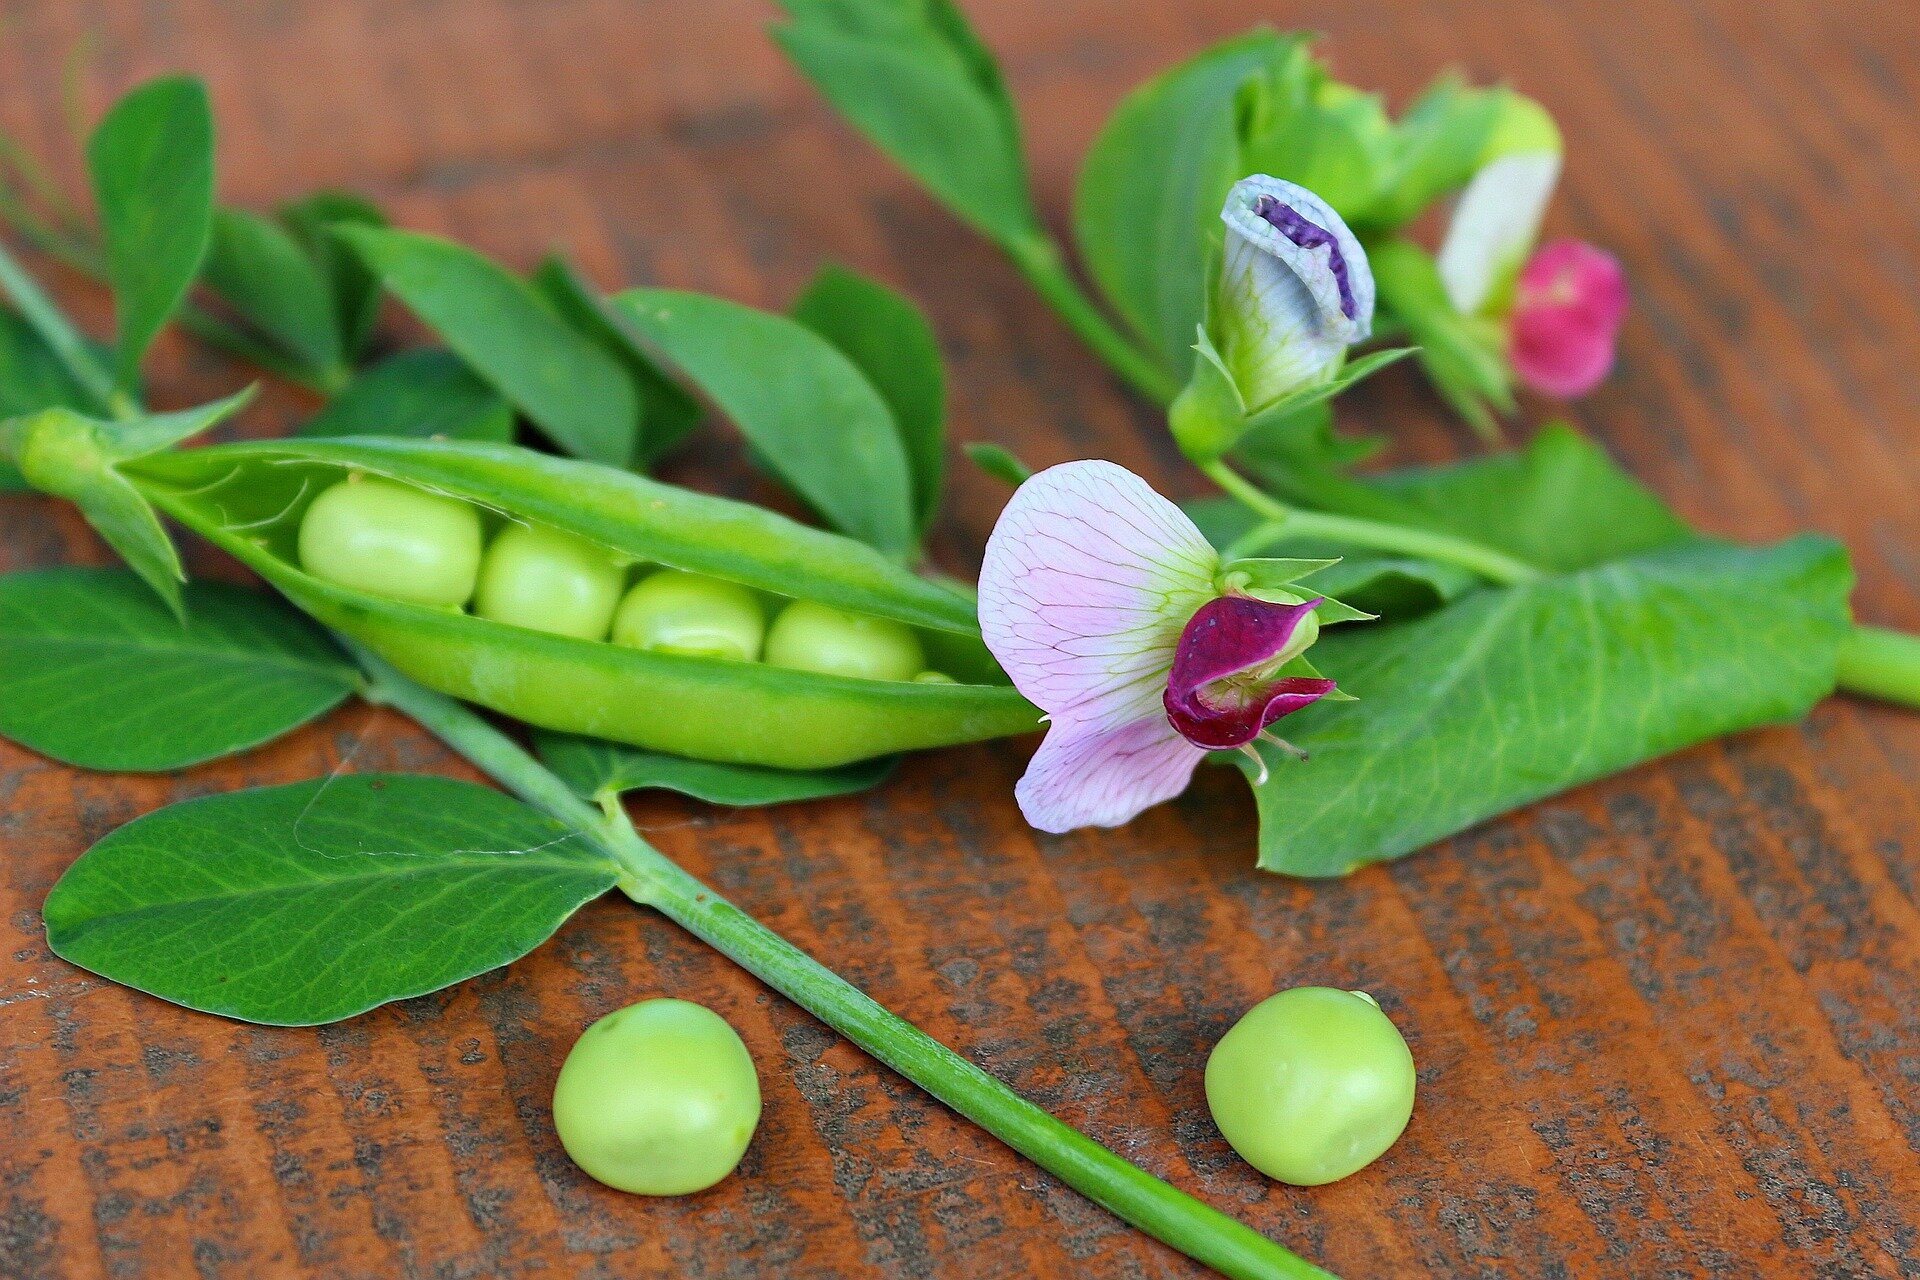 Pea plants that flower for longer